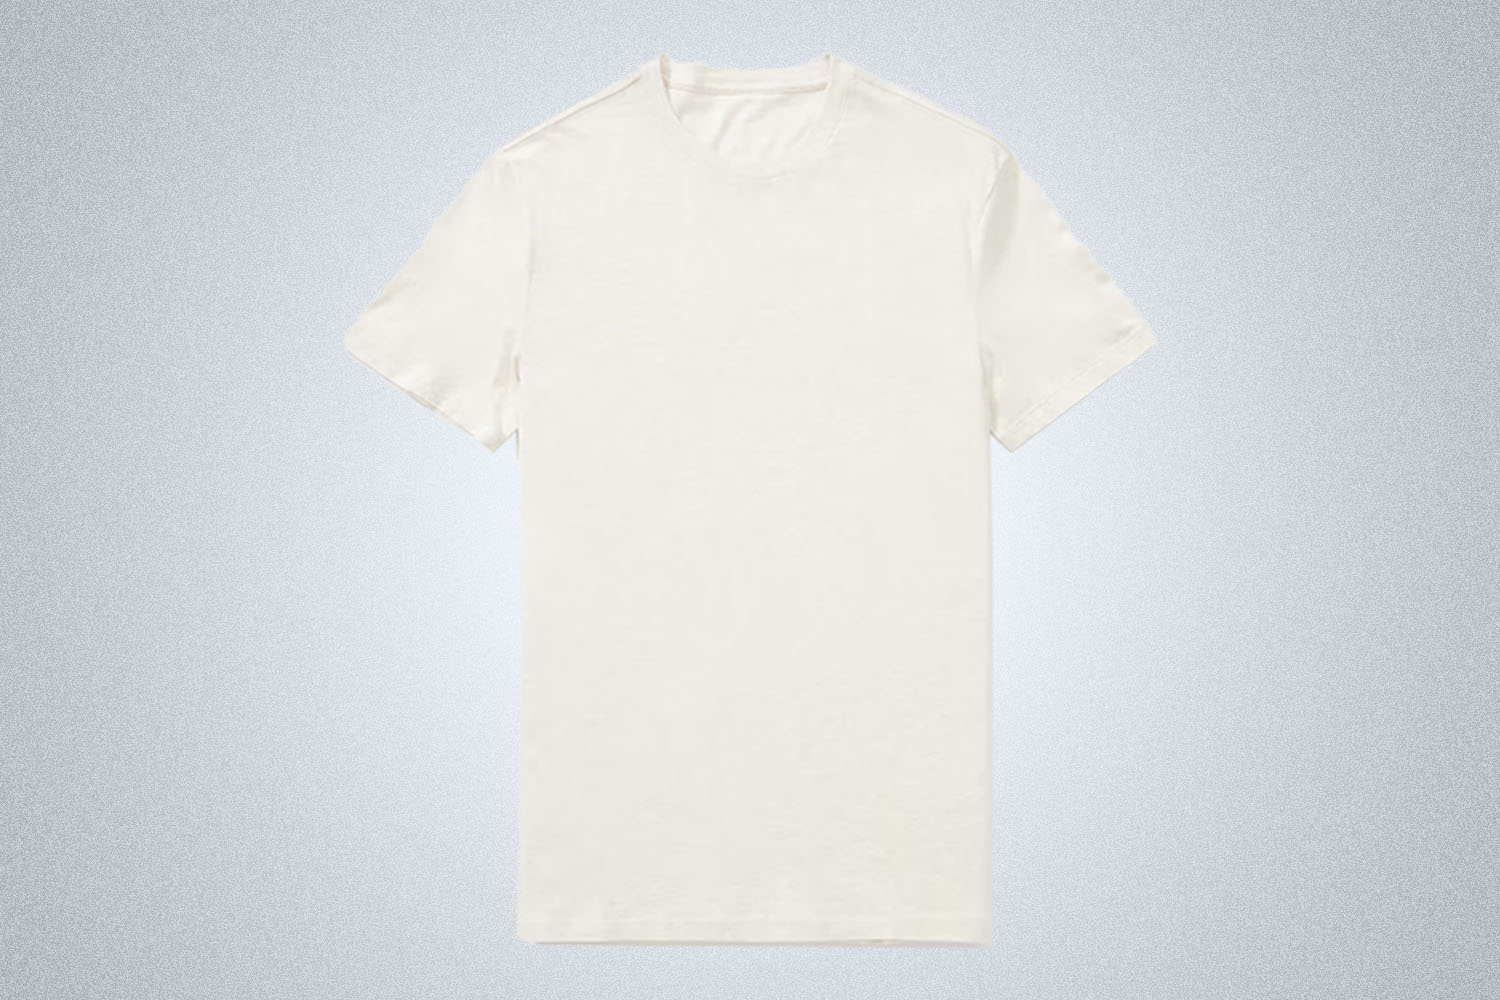 Long White Cloud Men's Organic Cotton T-shirt